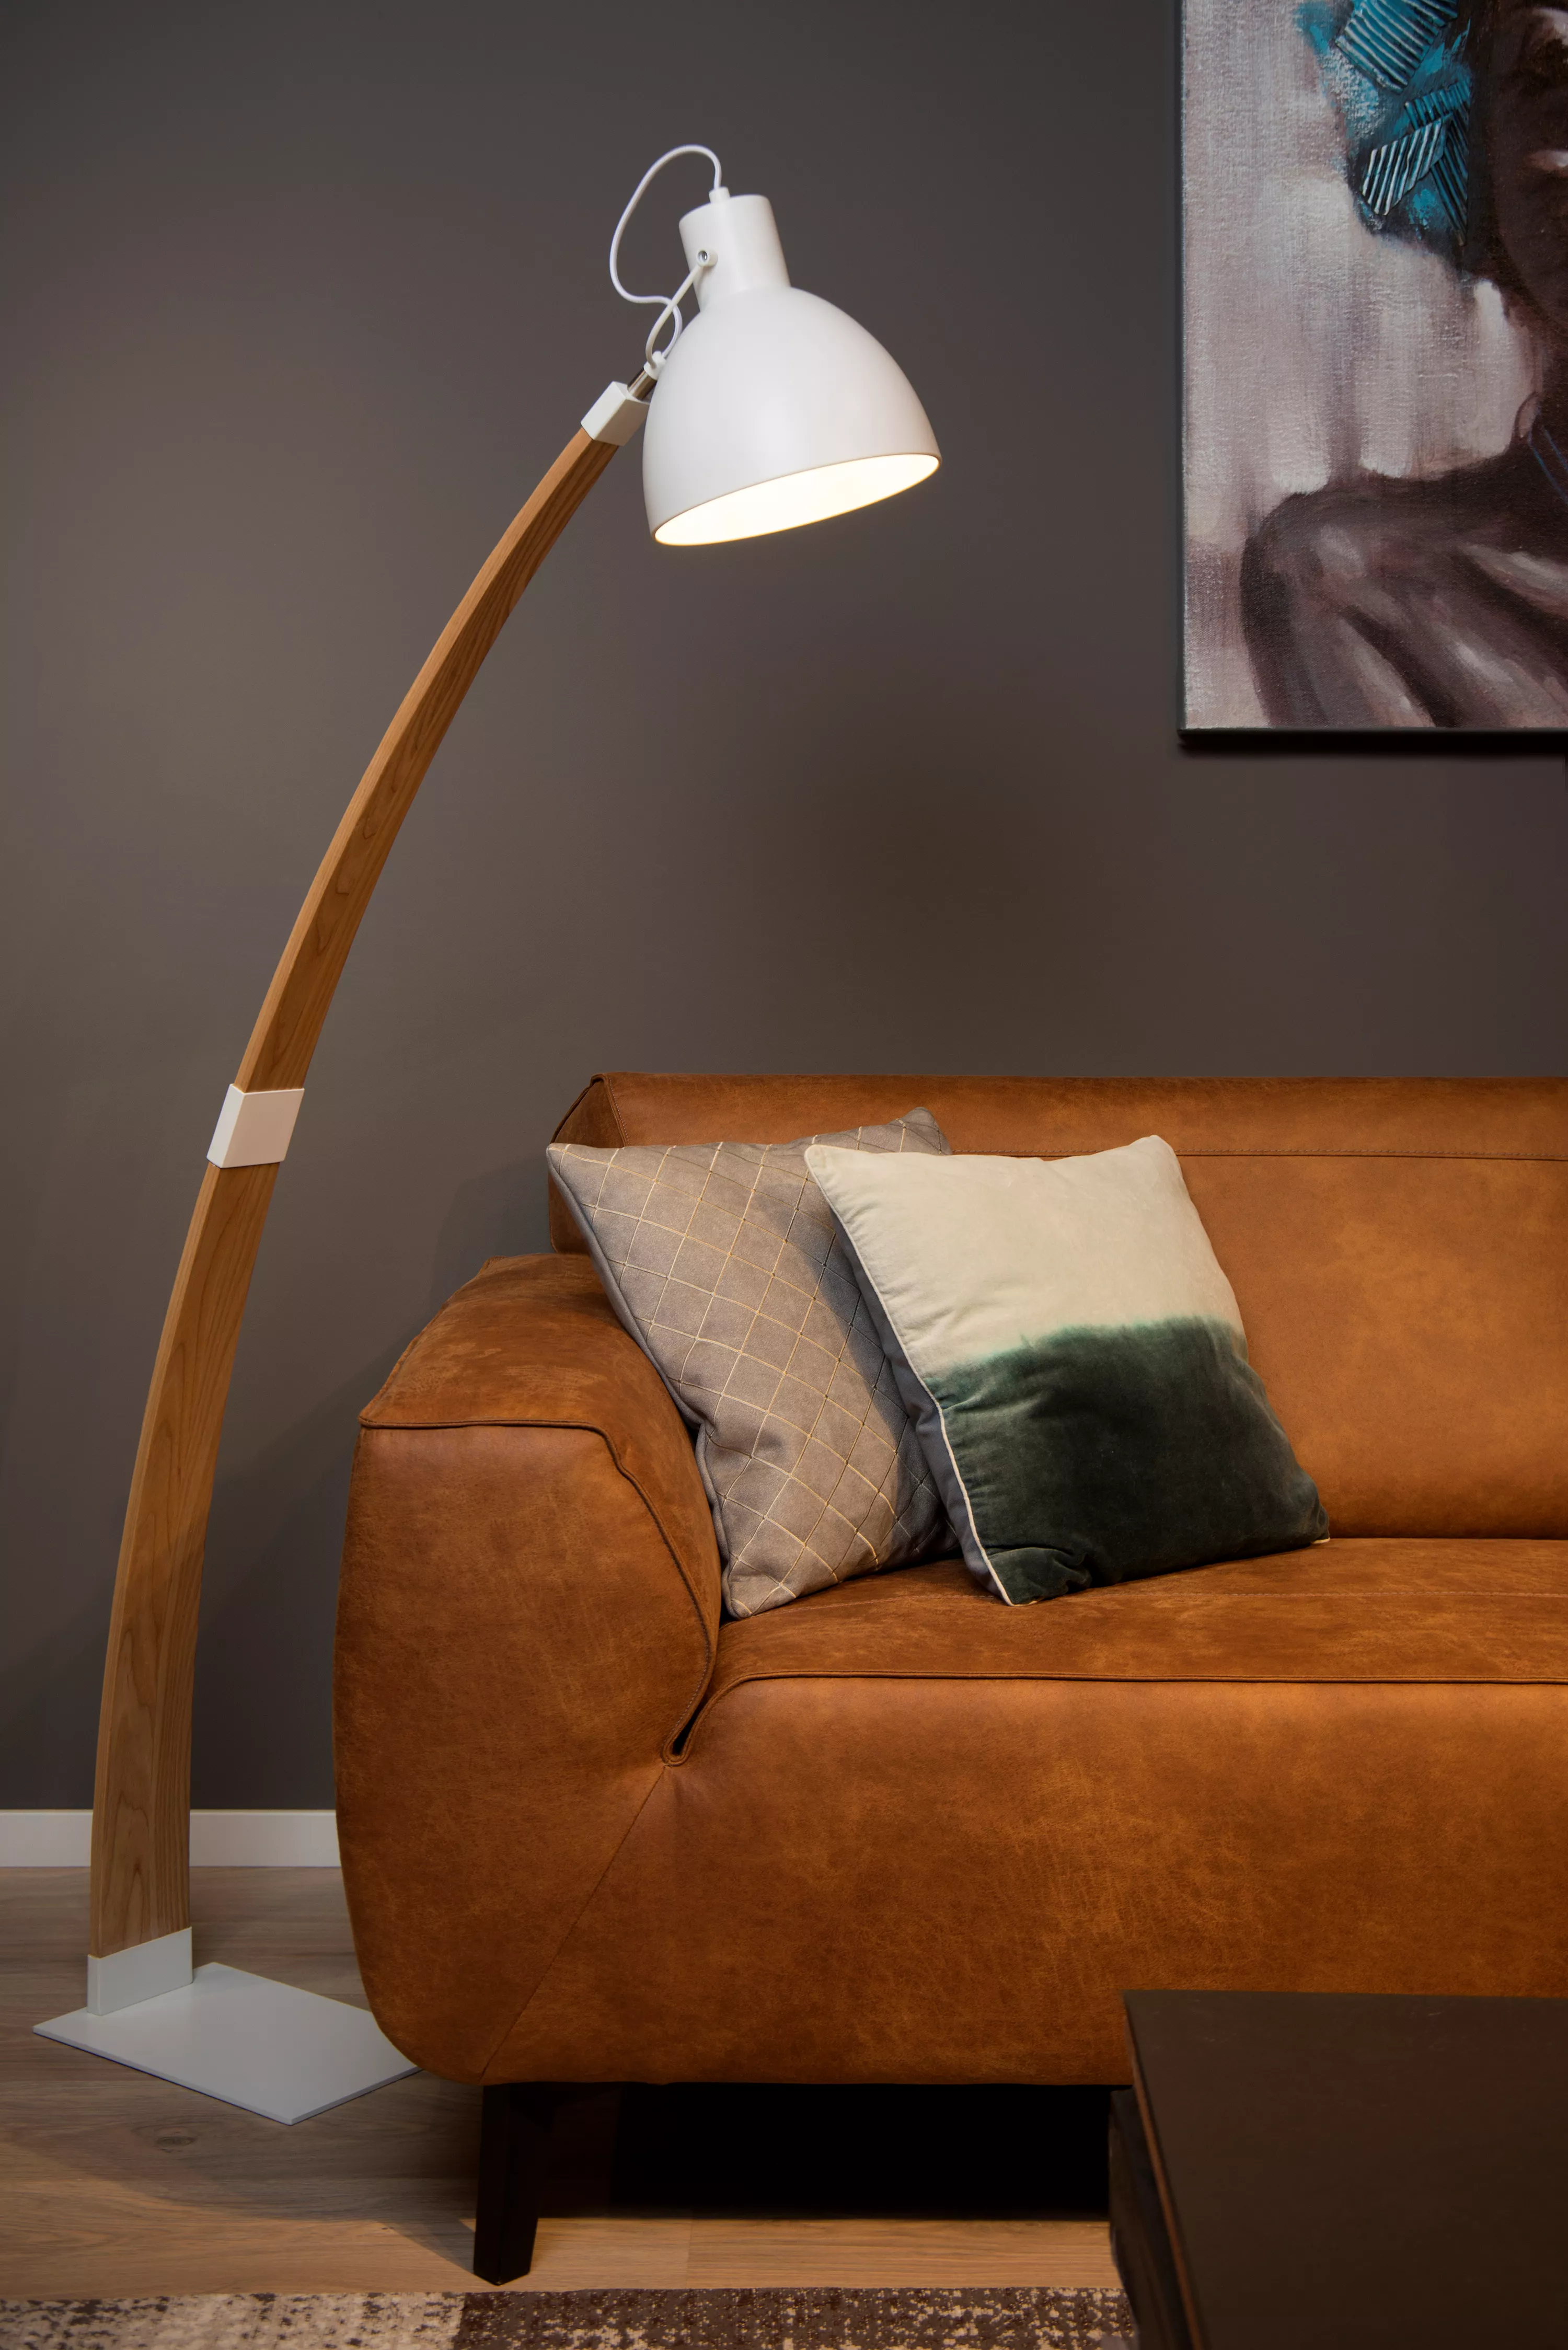 Stojacia lampa Curf v kombinácii dreva a bielej farby sa hodí do minimalistického interiéru, je ľahko smerovateľná podľa potreby.